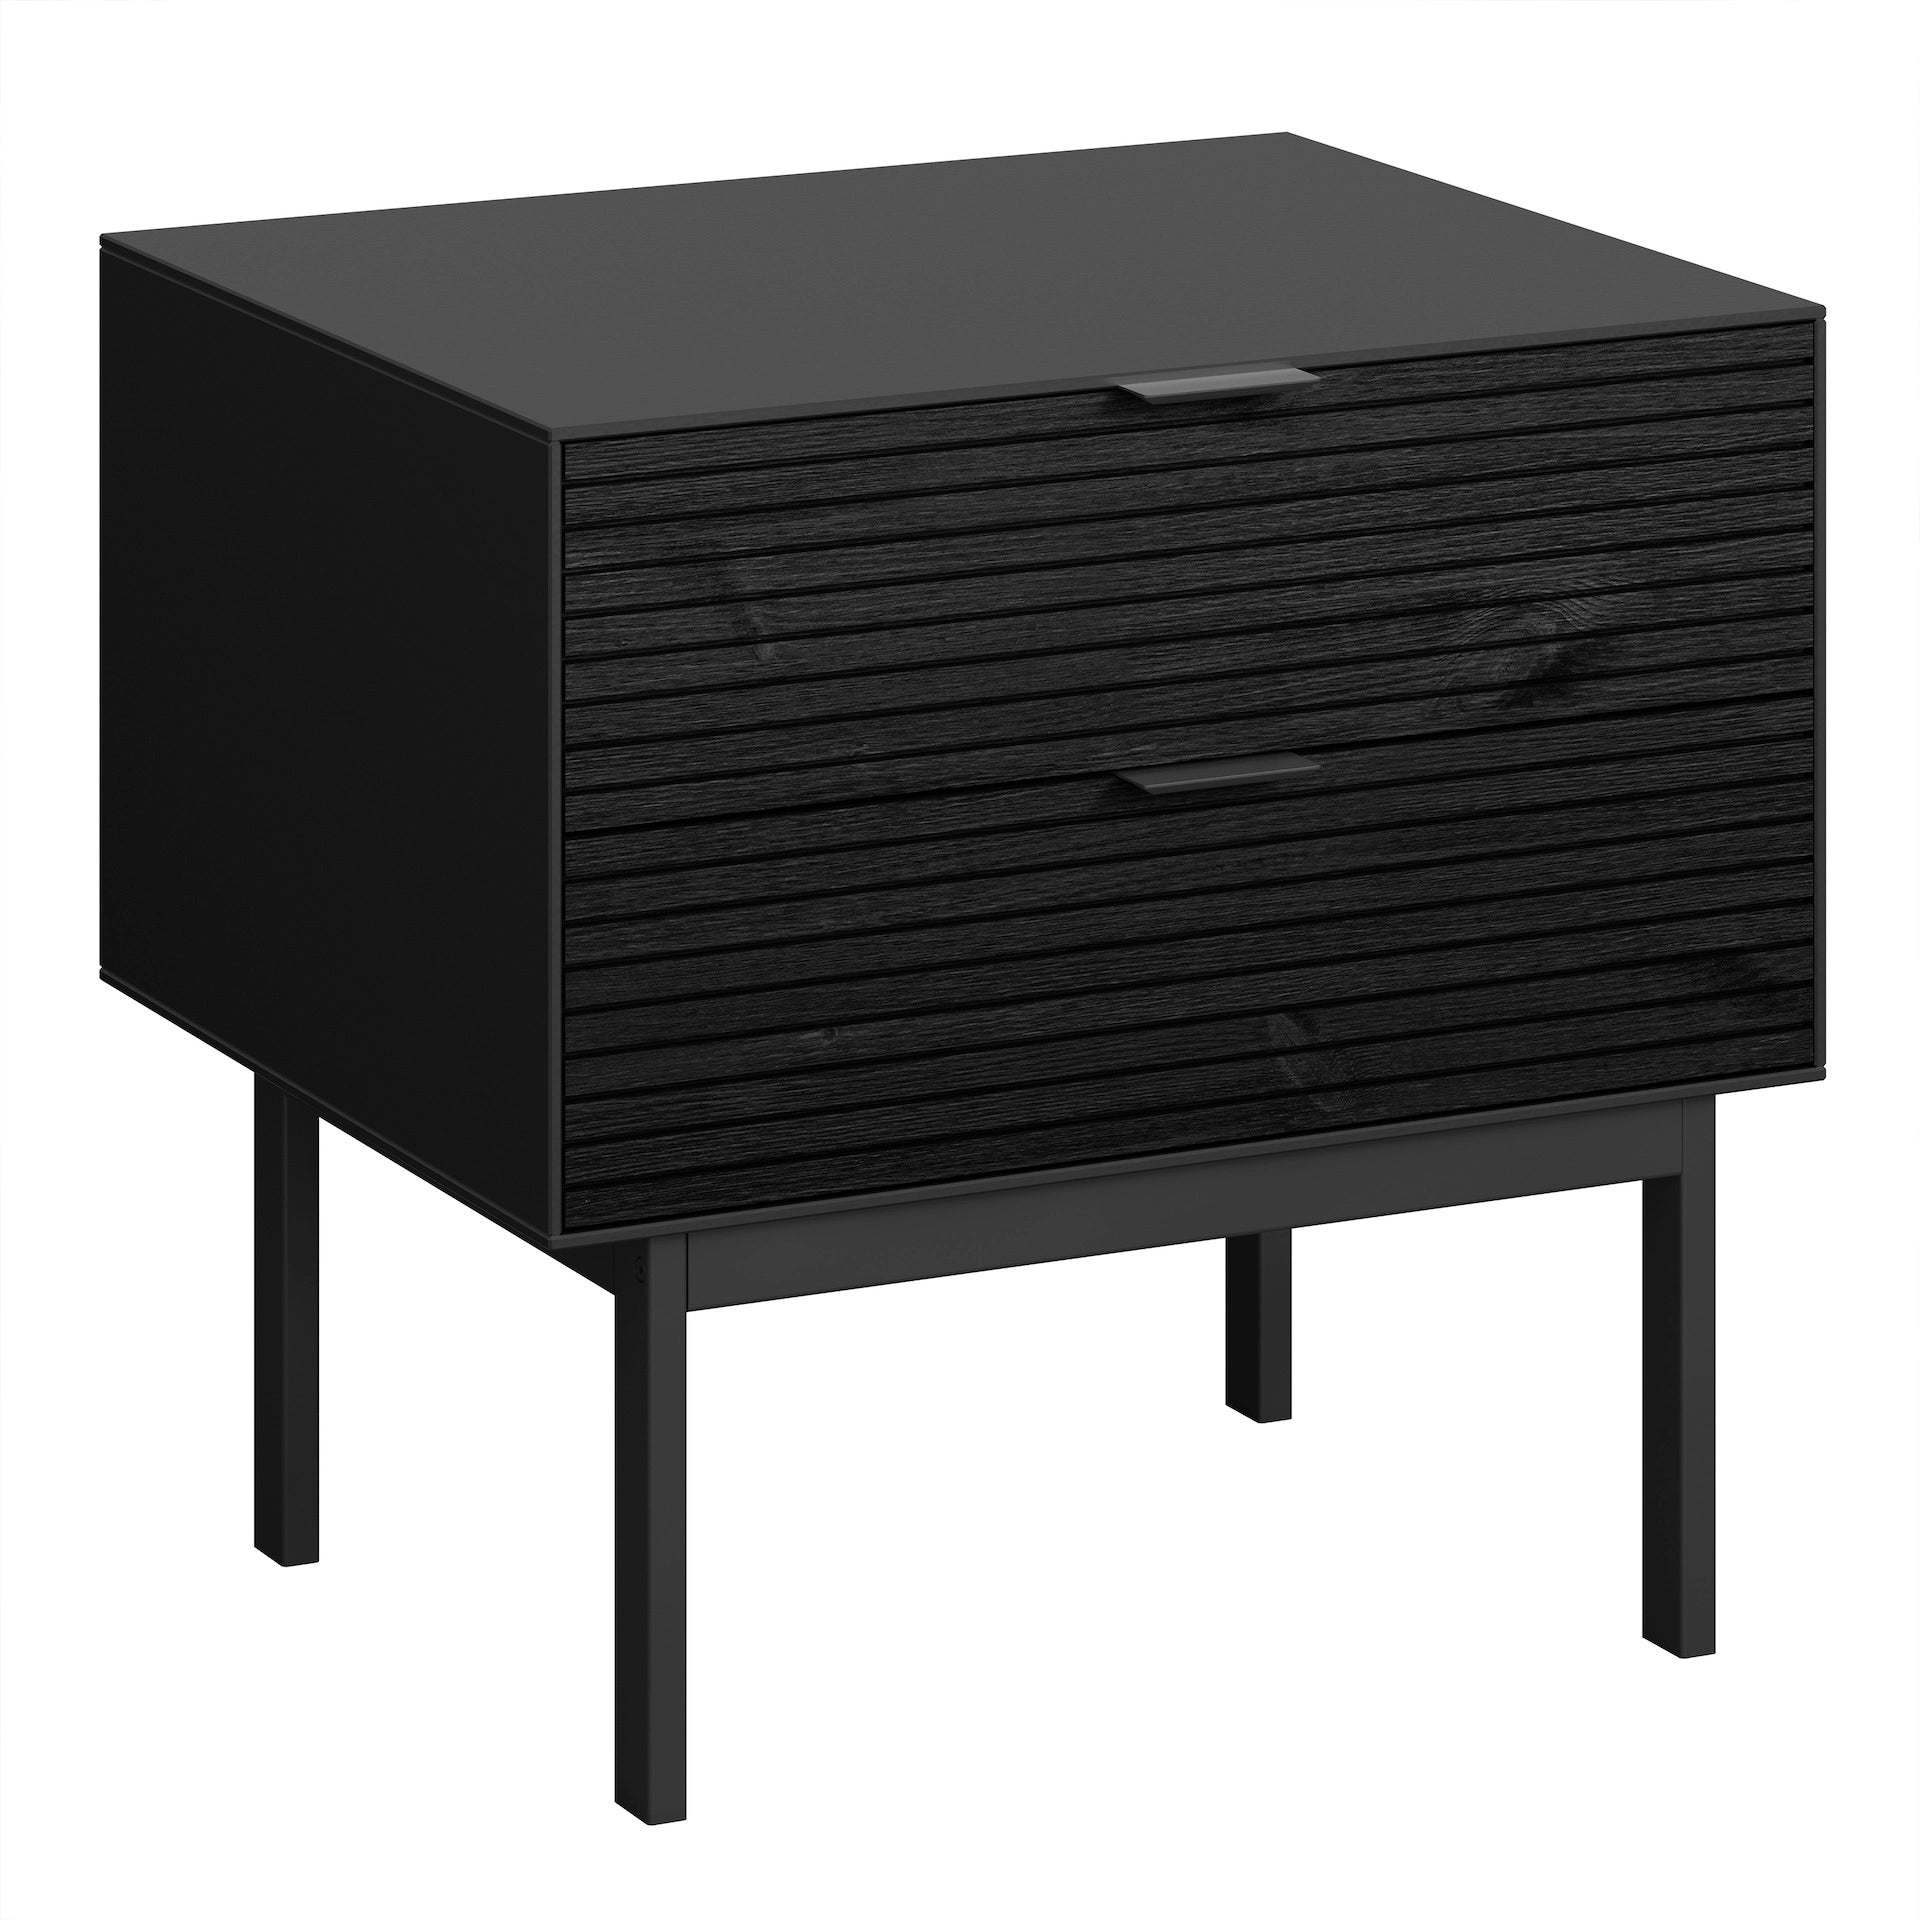 Furniture To Go Soma Bedside Table 2 Drawers Granulated Black Brushed Black